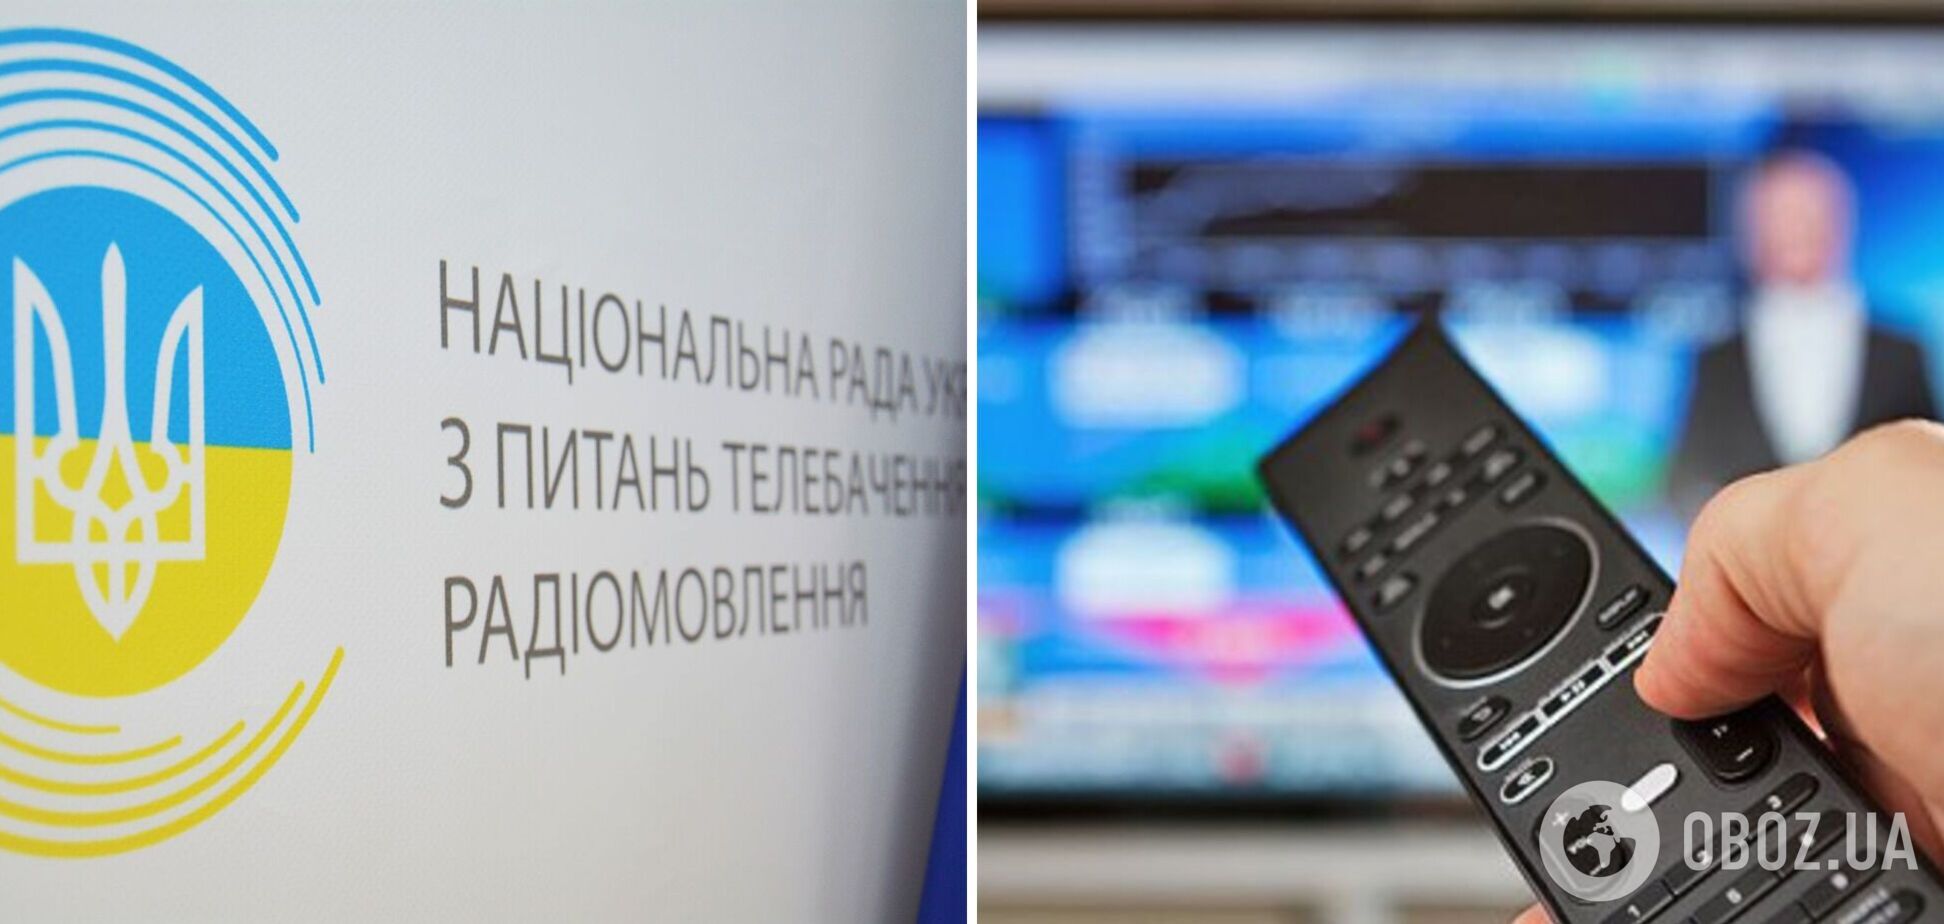 HD REZKA, Баскино, Filmix потрапили у бан: в Україні заборонили трансляцію 16 медіасервісів, пов'язаних із РФ